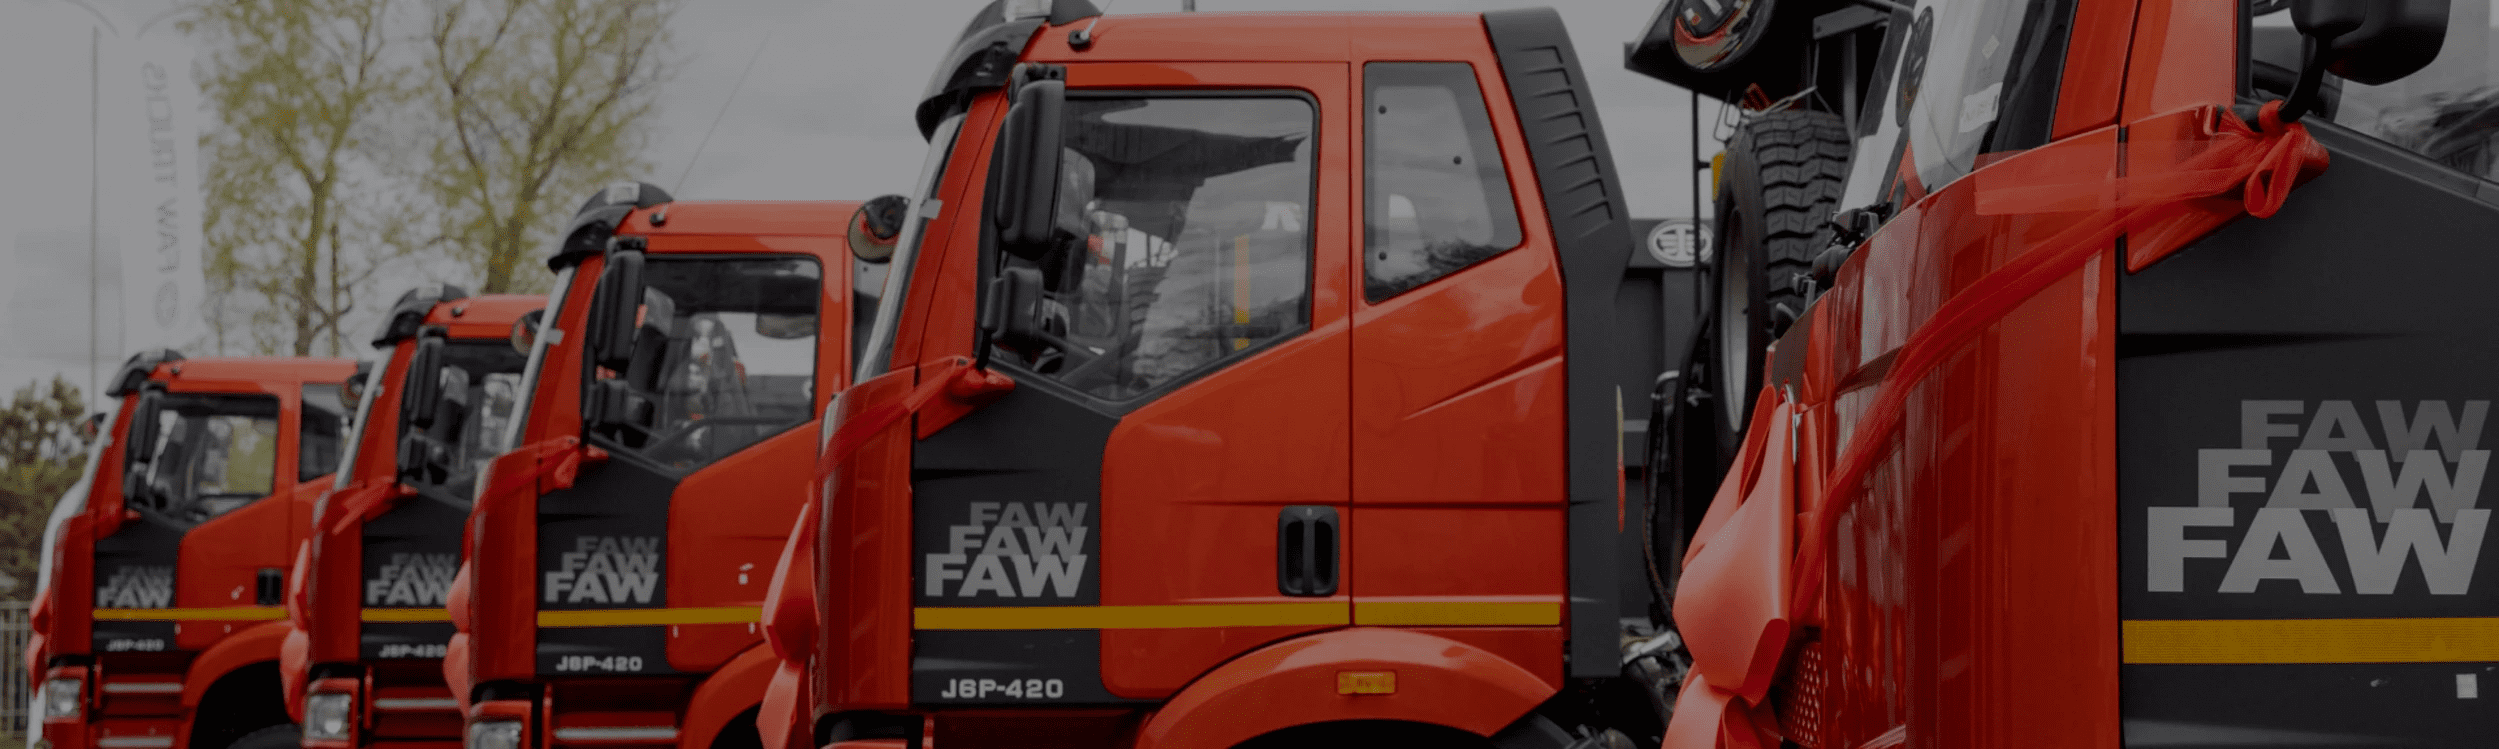 Приобретайте надежные самосвалы FAW Trucks